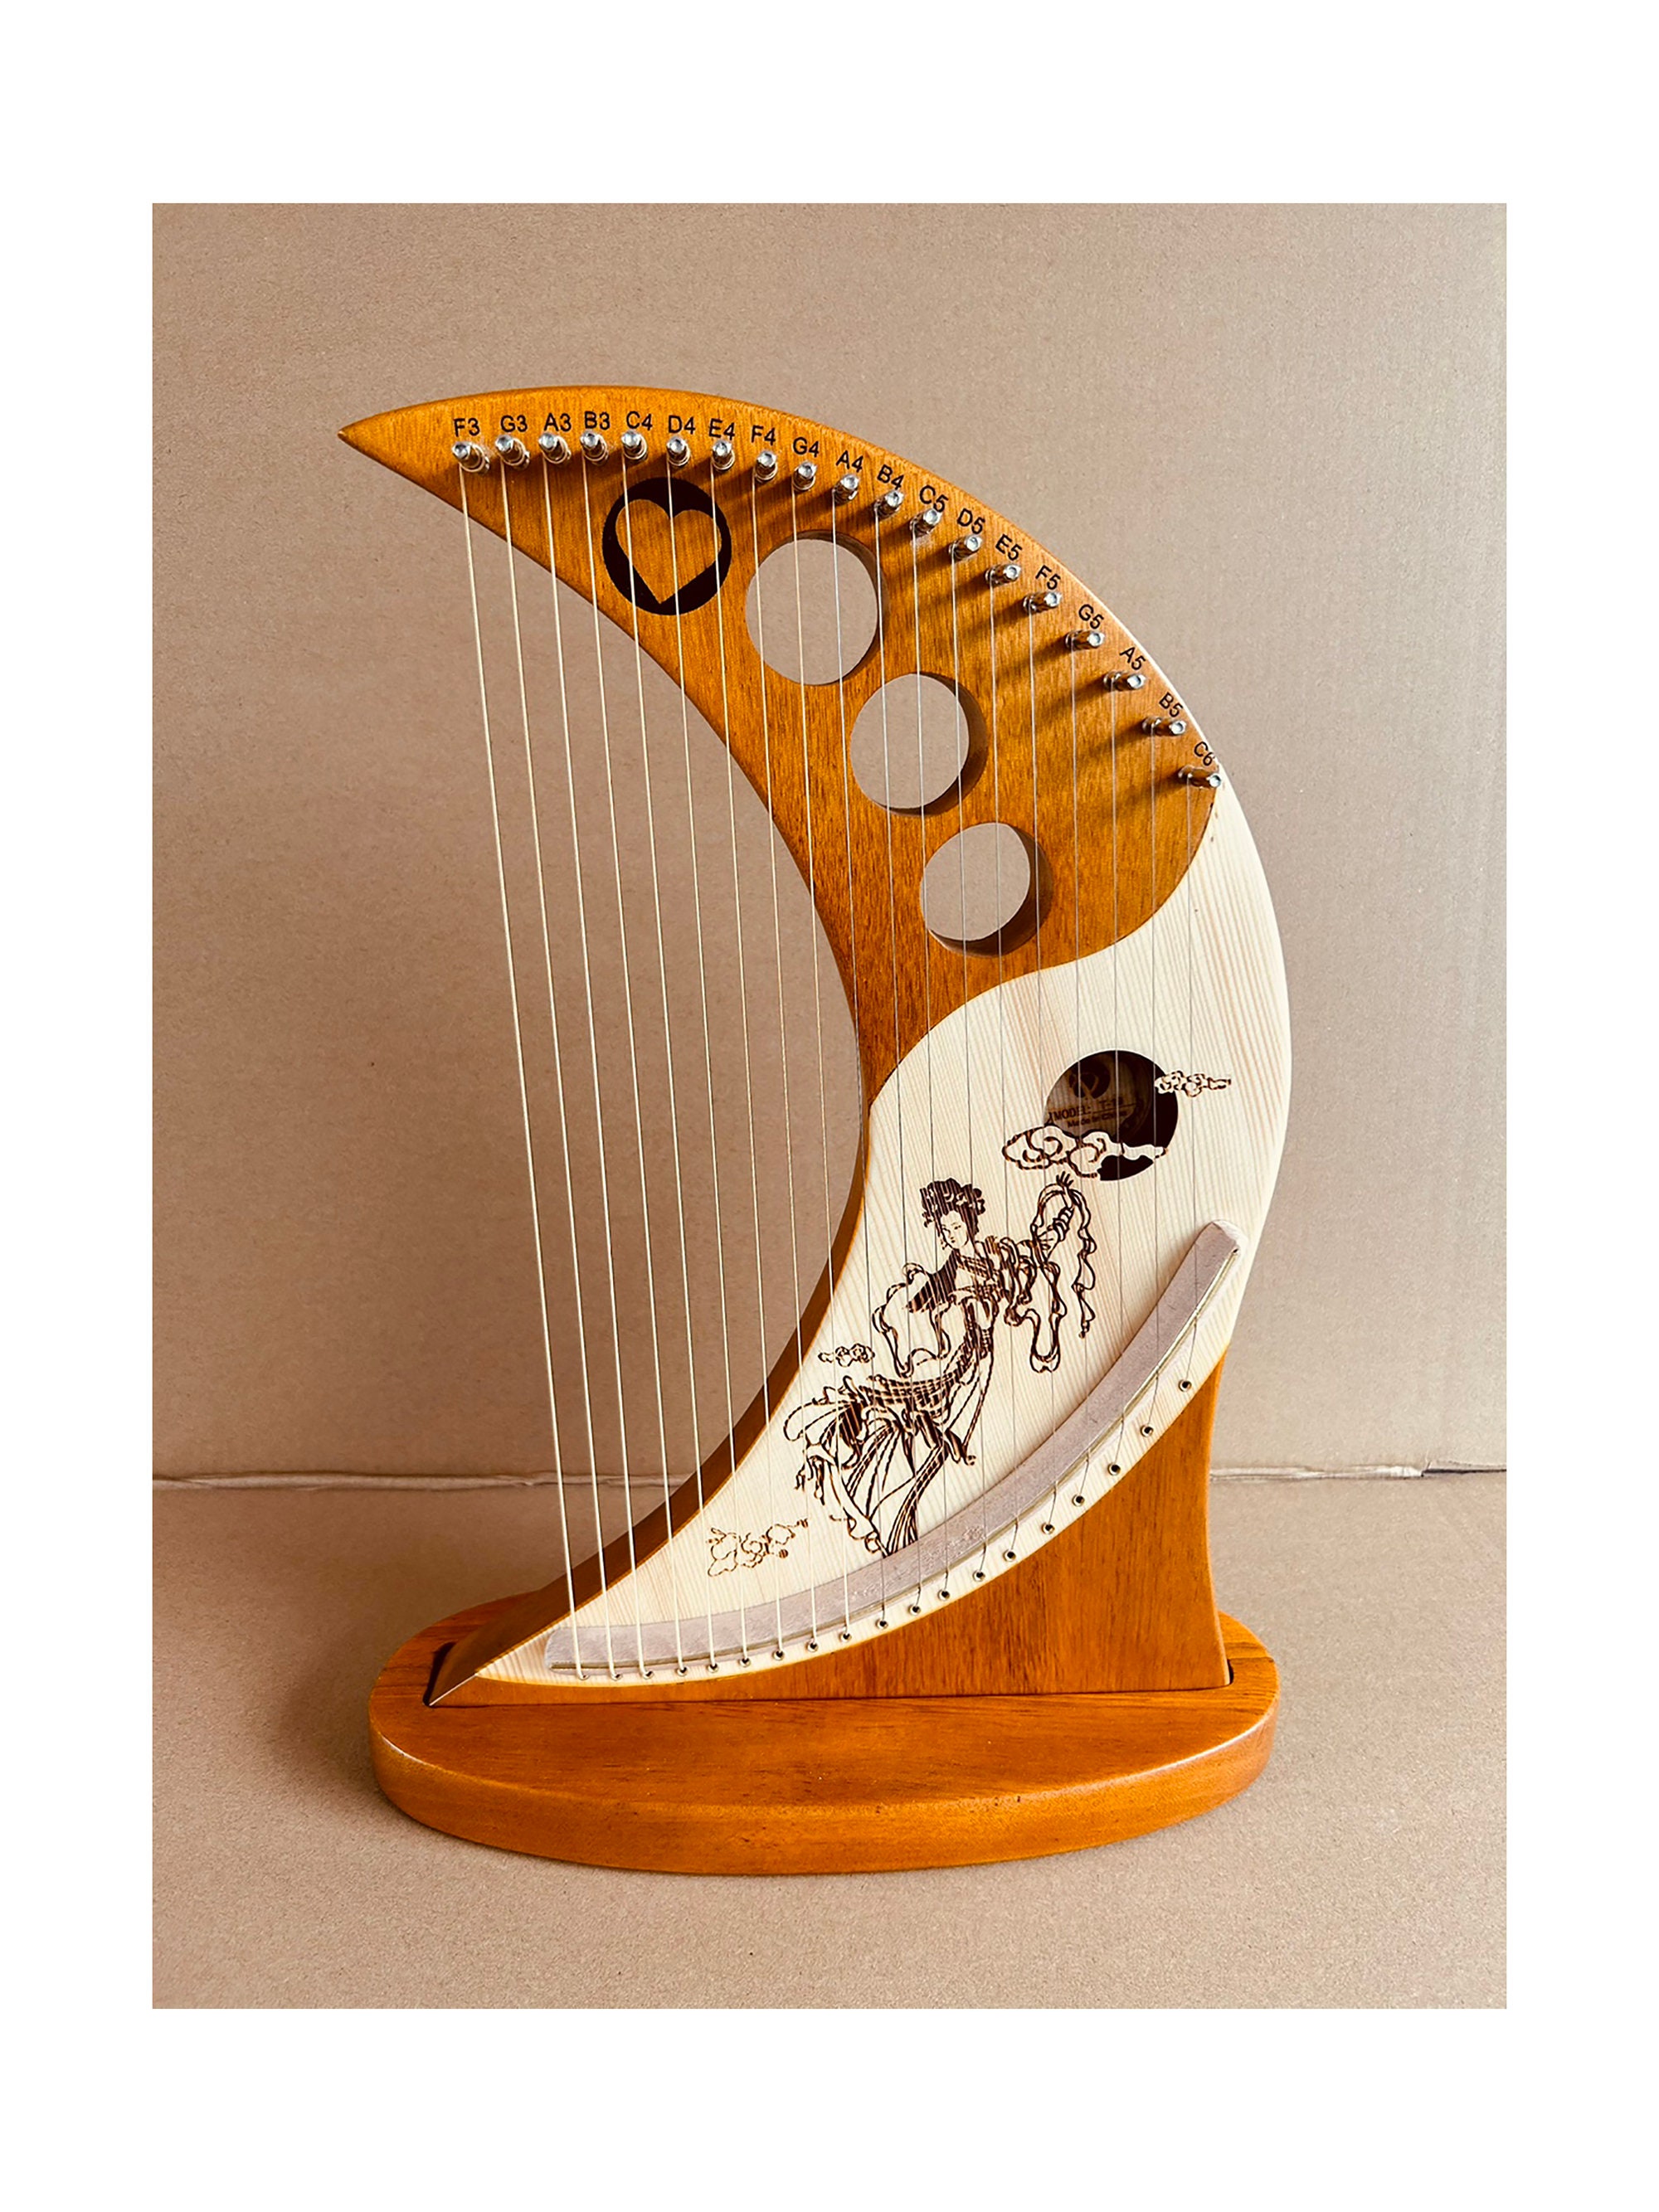 Chang (jaw harp), Afghan